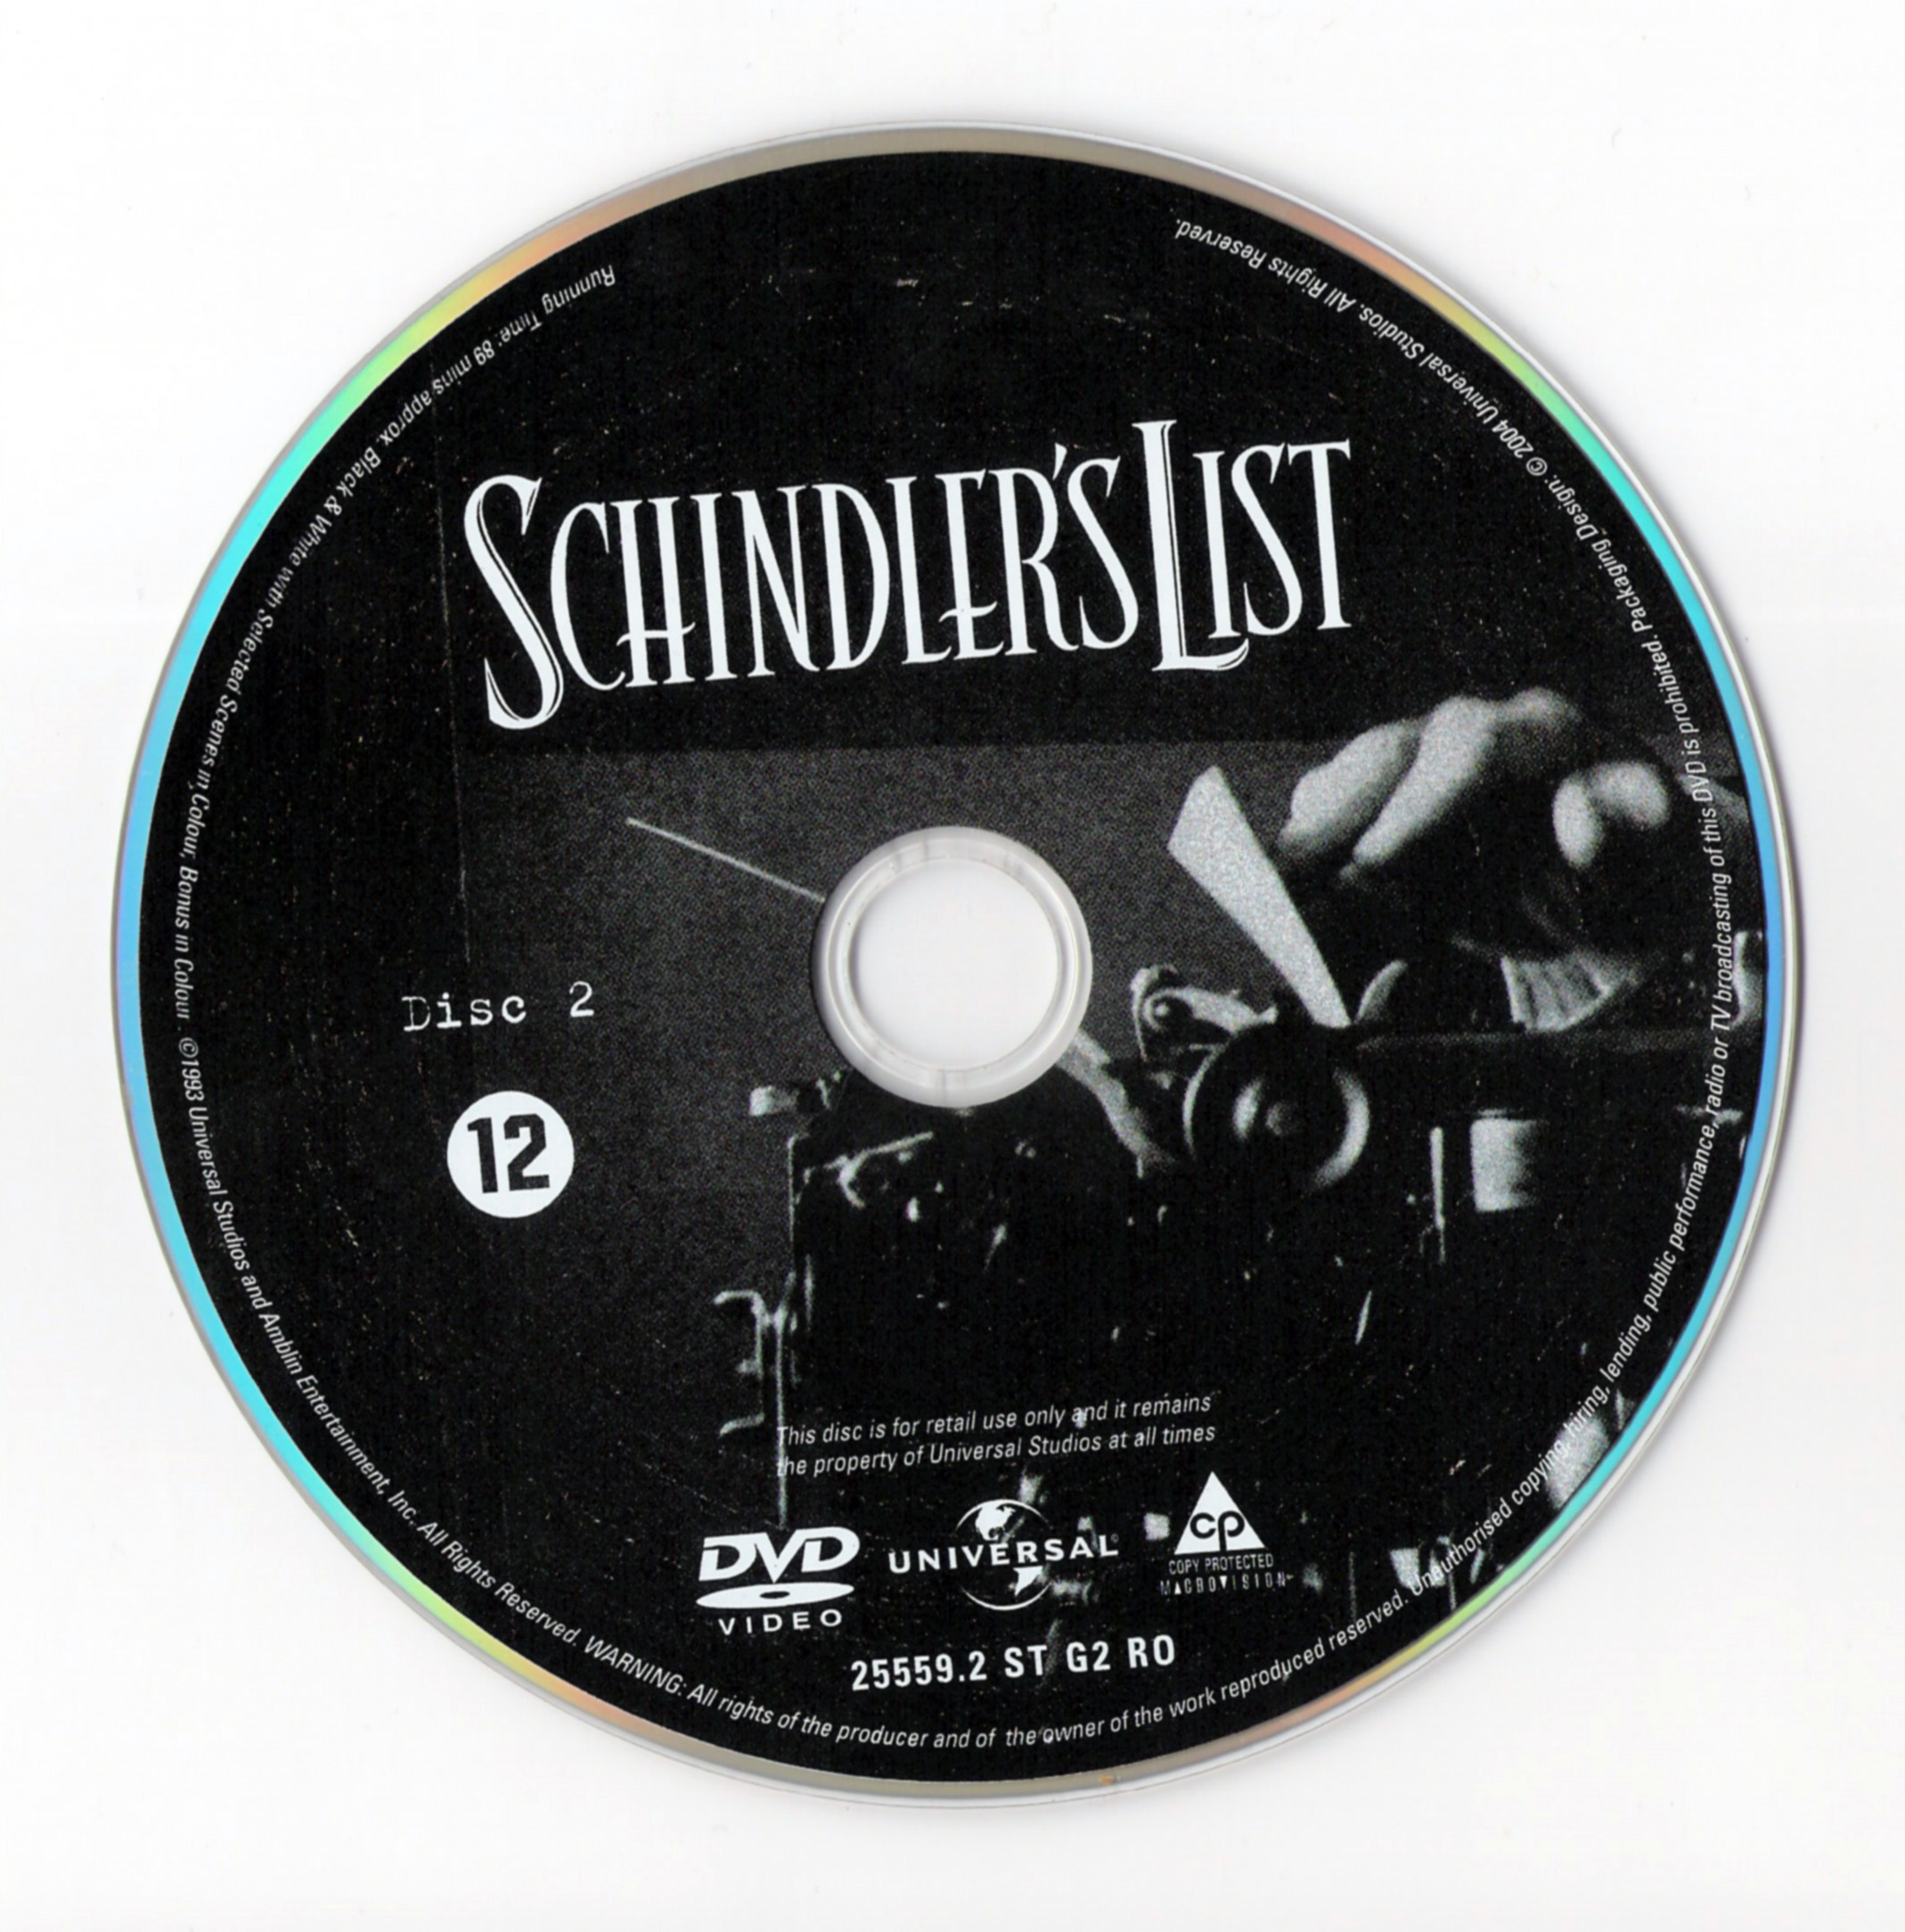 La liste de Schindler DISC 2